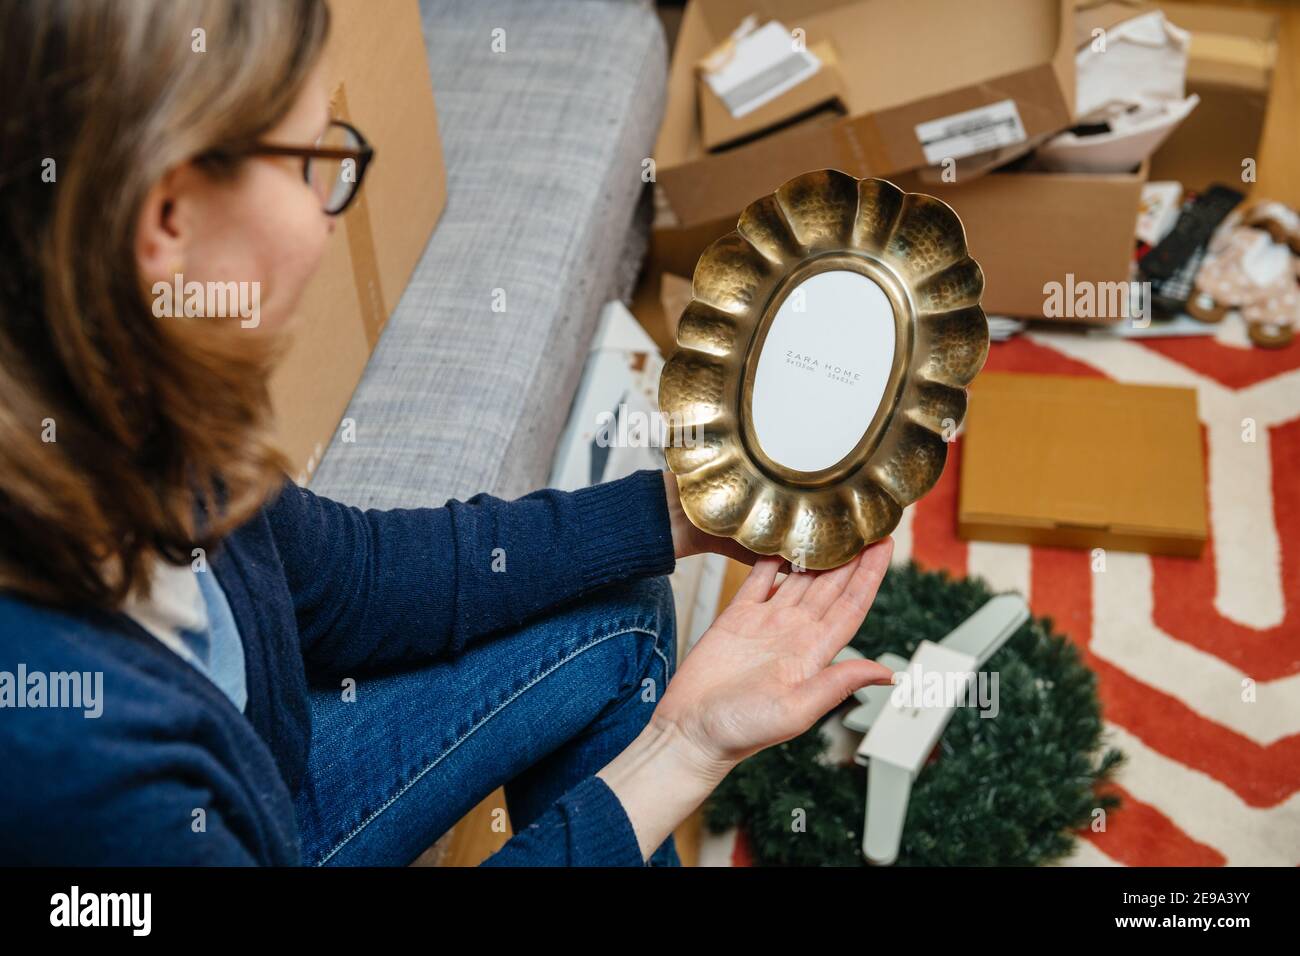 Paris, Francia - Jan 22, 2021: POV mujer unboxing nuevo Zara Home producto  - hermoso marco de acero forjado vintage Fotografía de stock - Alamy